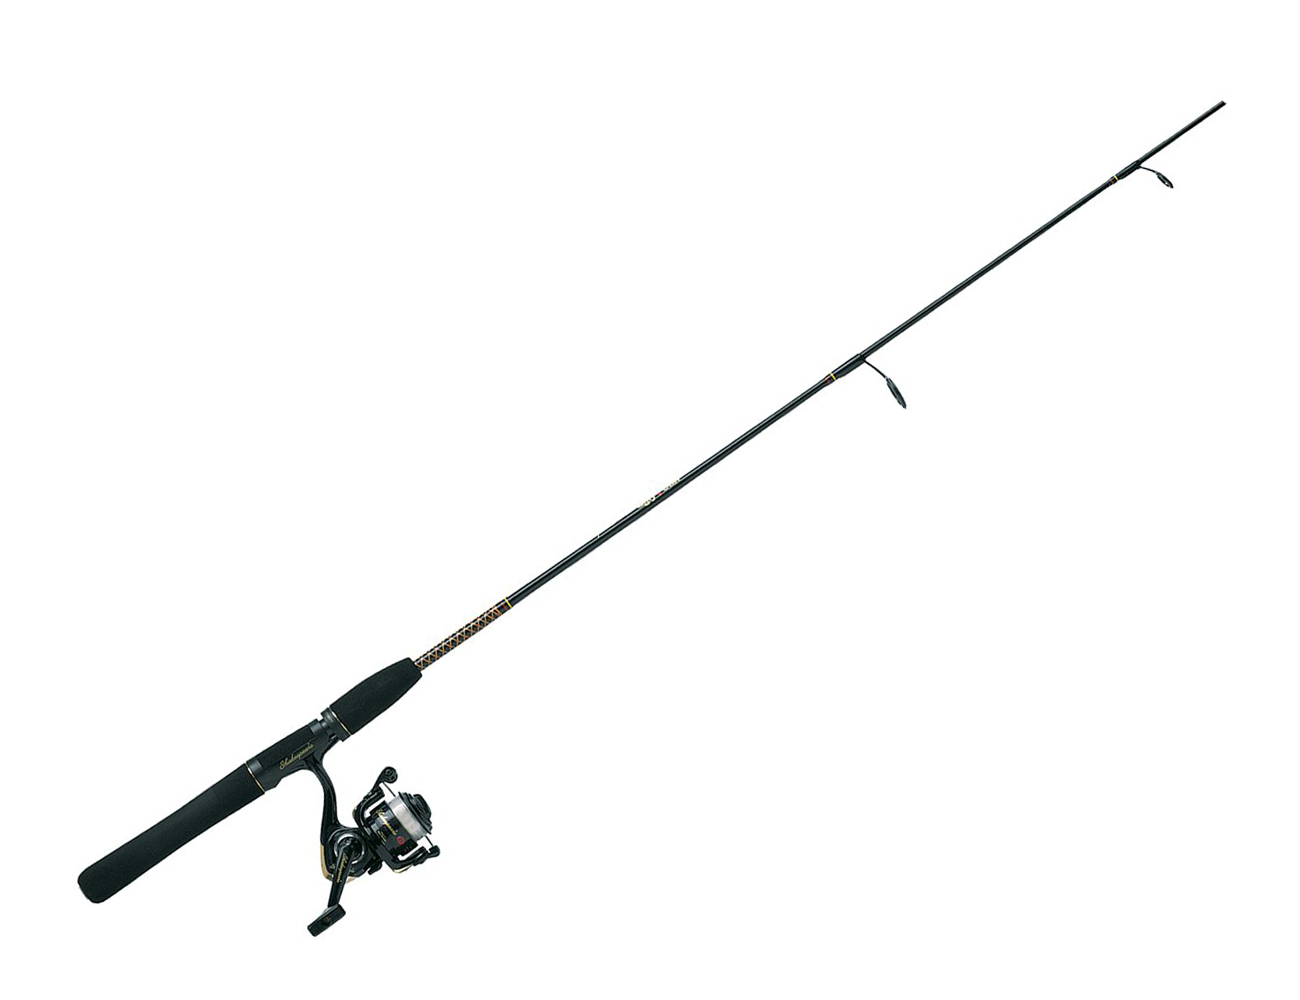 Fishing pole fishing rod clip - Fishing Pole Clipart